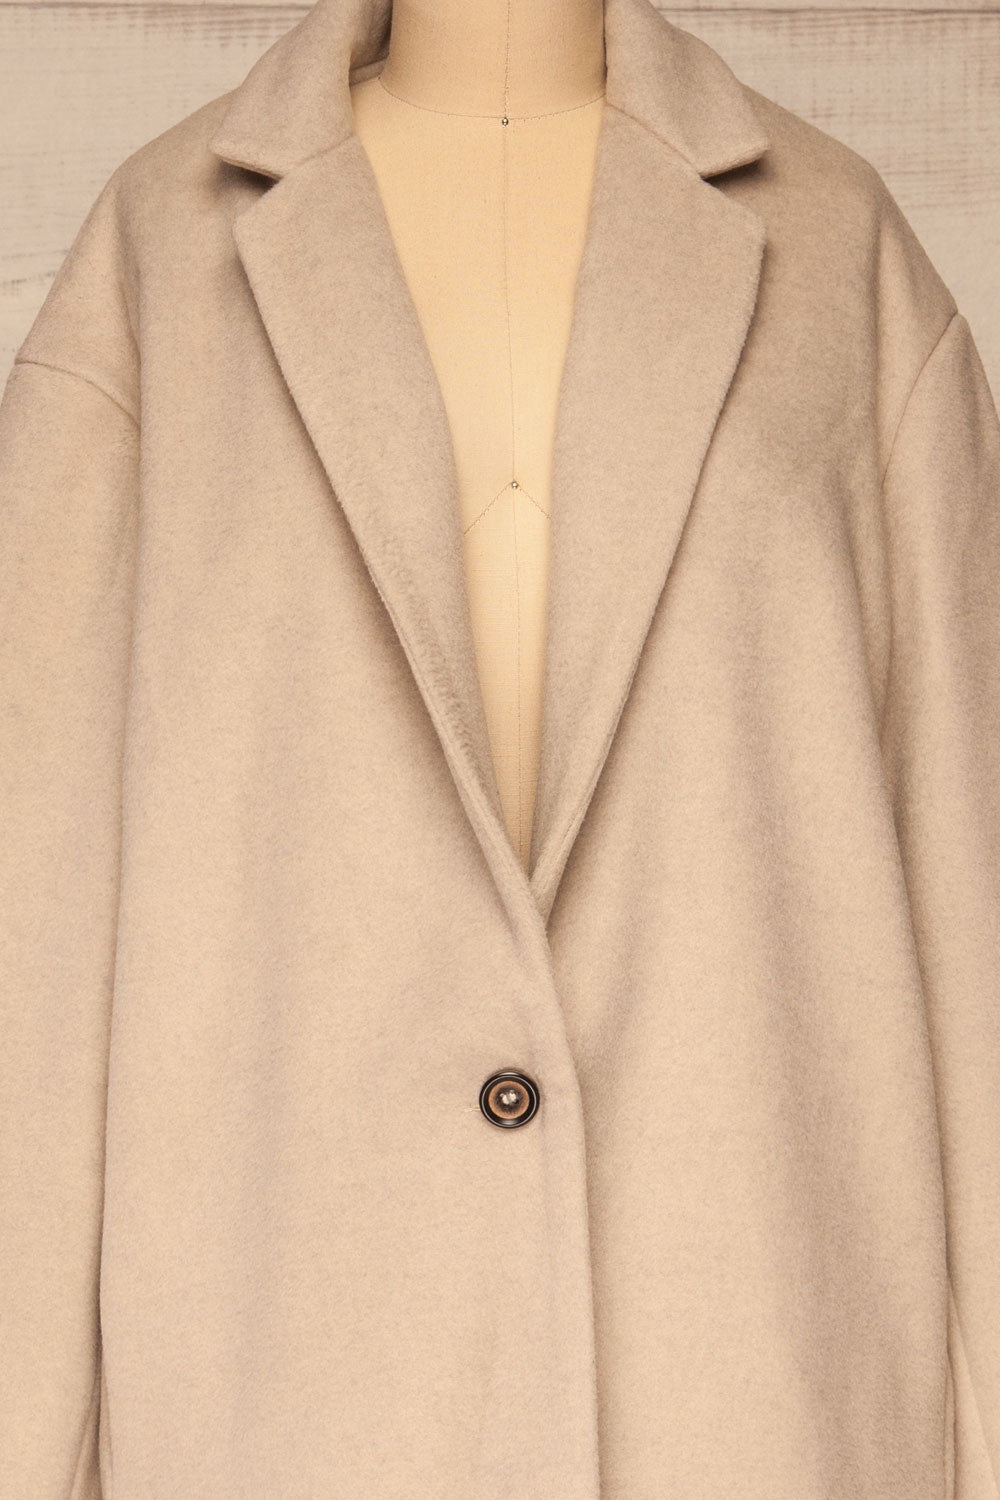 Pinczow Long Beige Wool Coat | La petite garçonne  front close-up